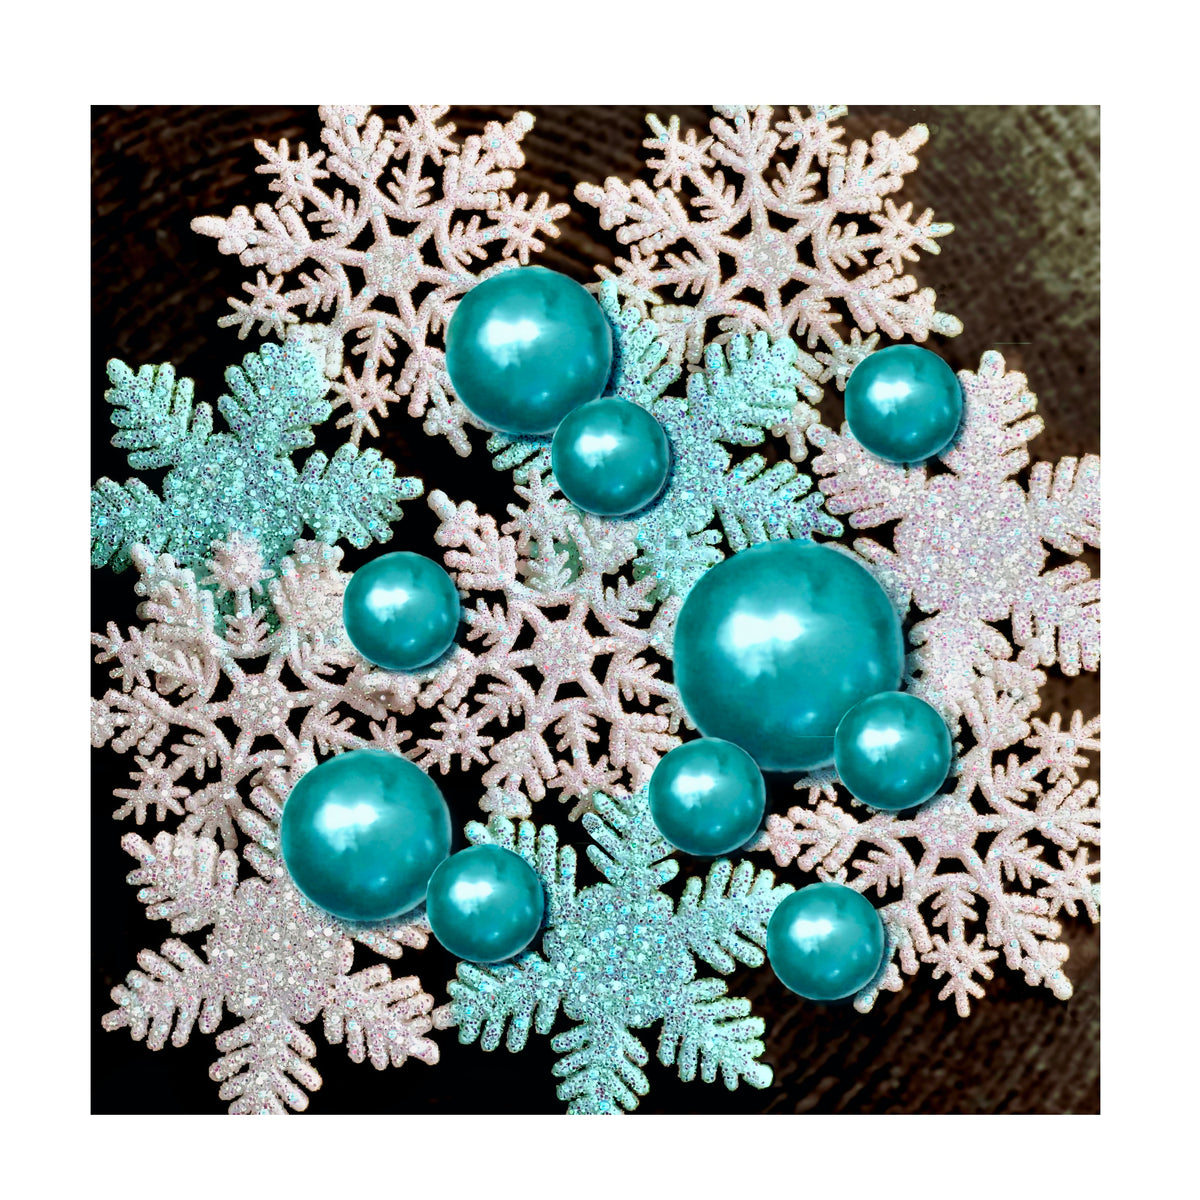 Copos de nieve blancos brillantes "flotantes" y perlas azul agua - Decoraciones de jarrón de invierno